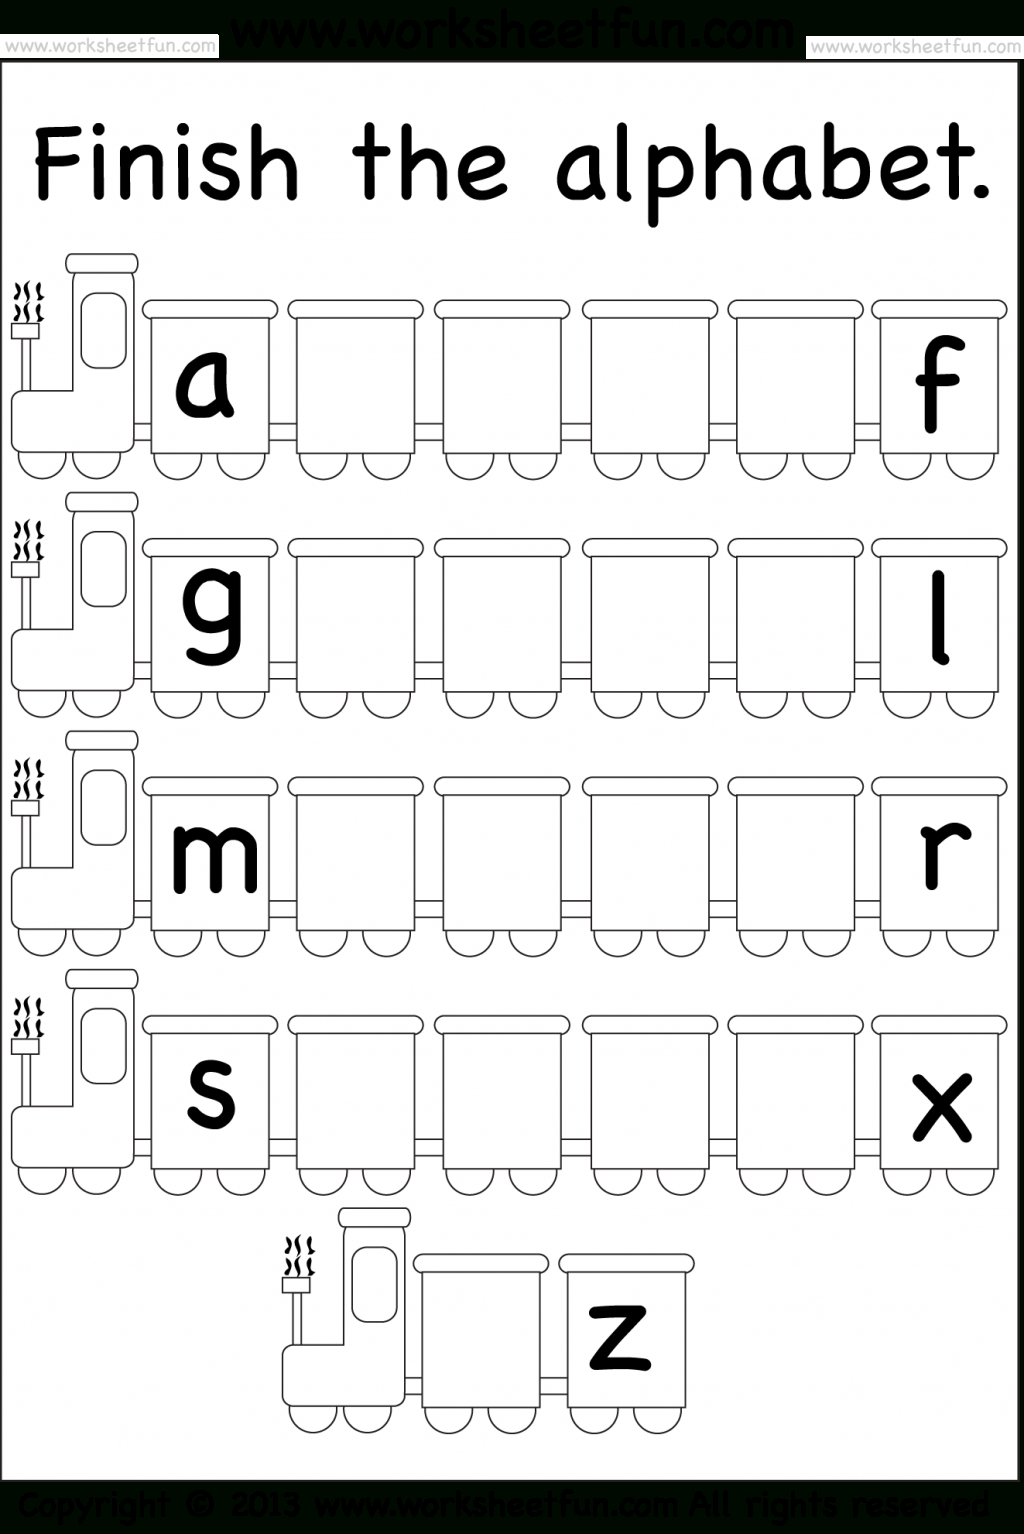 Letters Missing Free Printable Worksheets Az For intended for A-Z Alphabet Worksheets Kindergarten